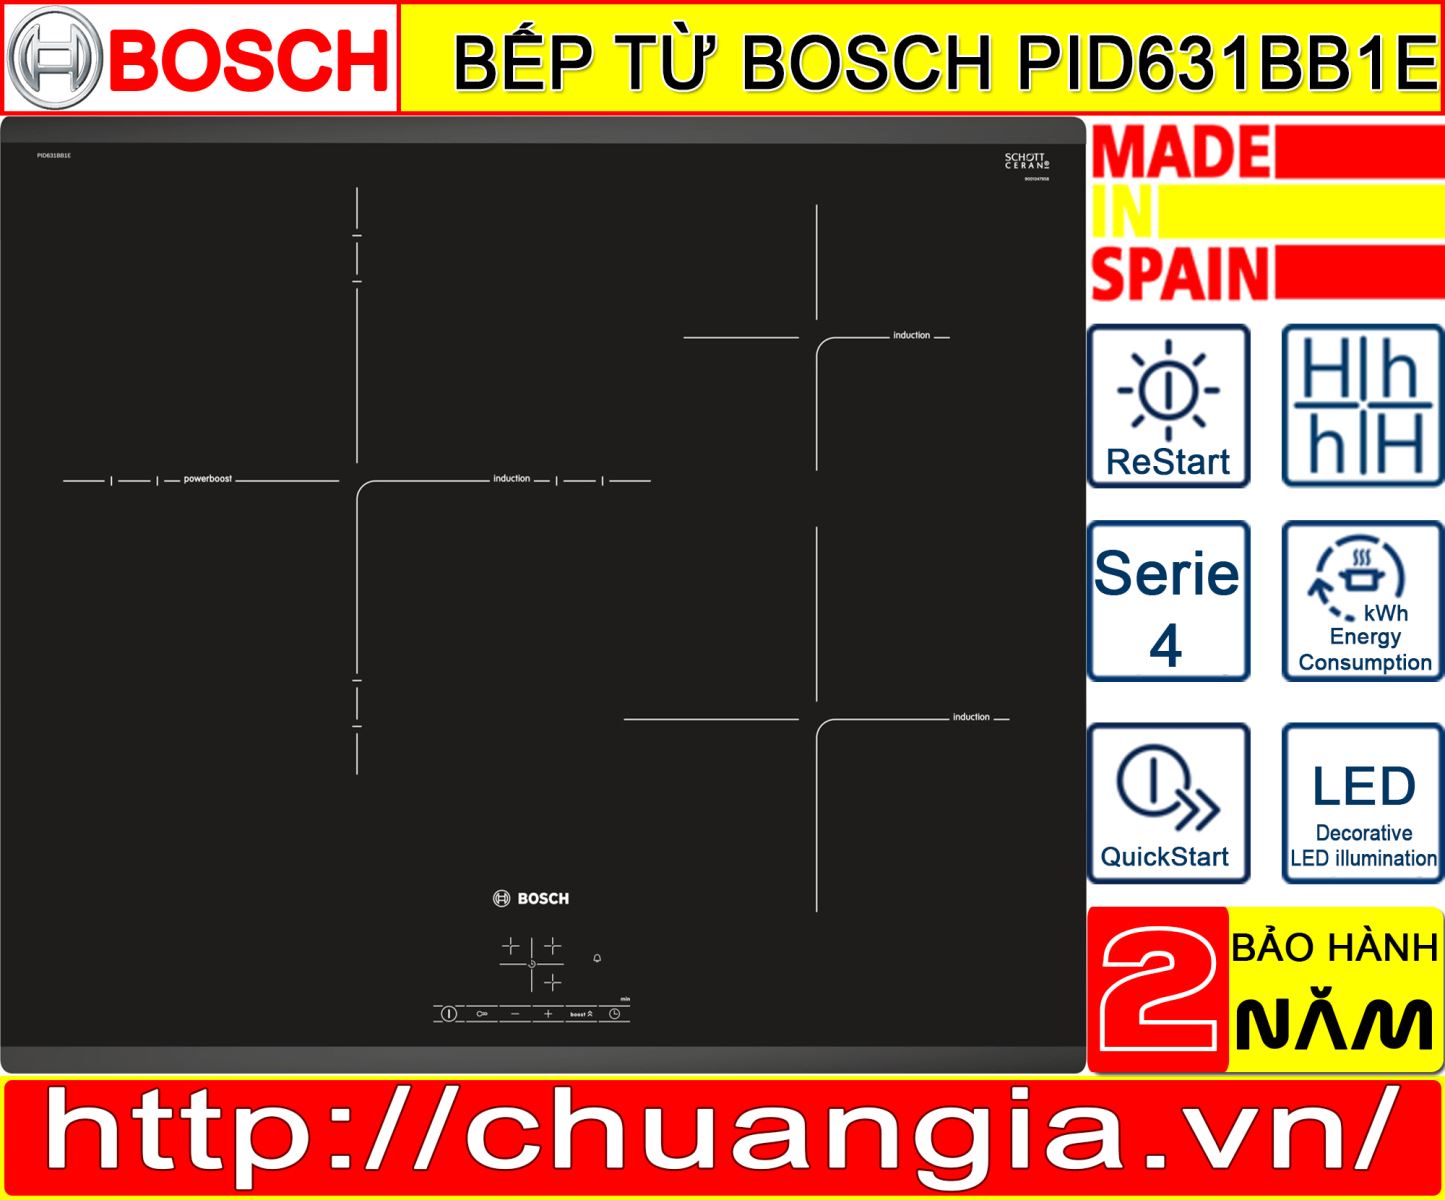 Bếp từ Bosch PID631BB1E, giá bếp từ bosch pid631bb1e, đánh giá bếp từ bosch pid631bb1e, hướng dẫn sử dụng bếp từ bosch pid631bb1e, bếp từ bosch puj631bb2e, bếp từ bosch pid675dc1e, bếp từ bosch puc631bb2e, bếp từ bosch pvj631fb1e, pid631bb1e bosch